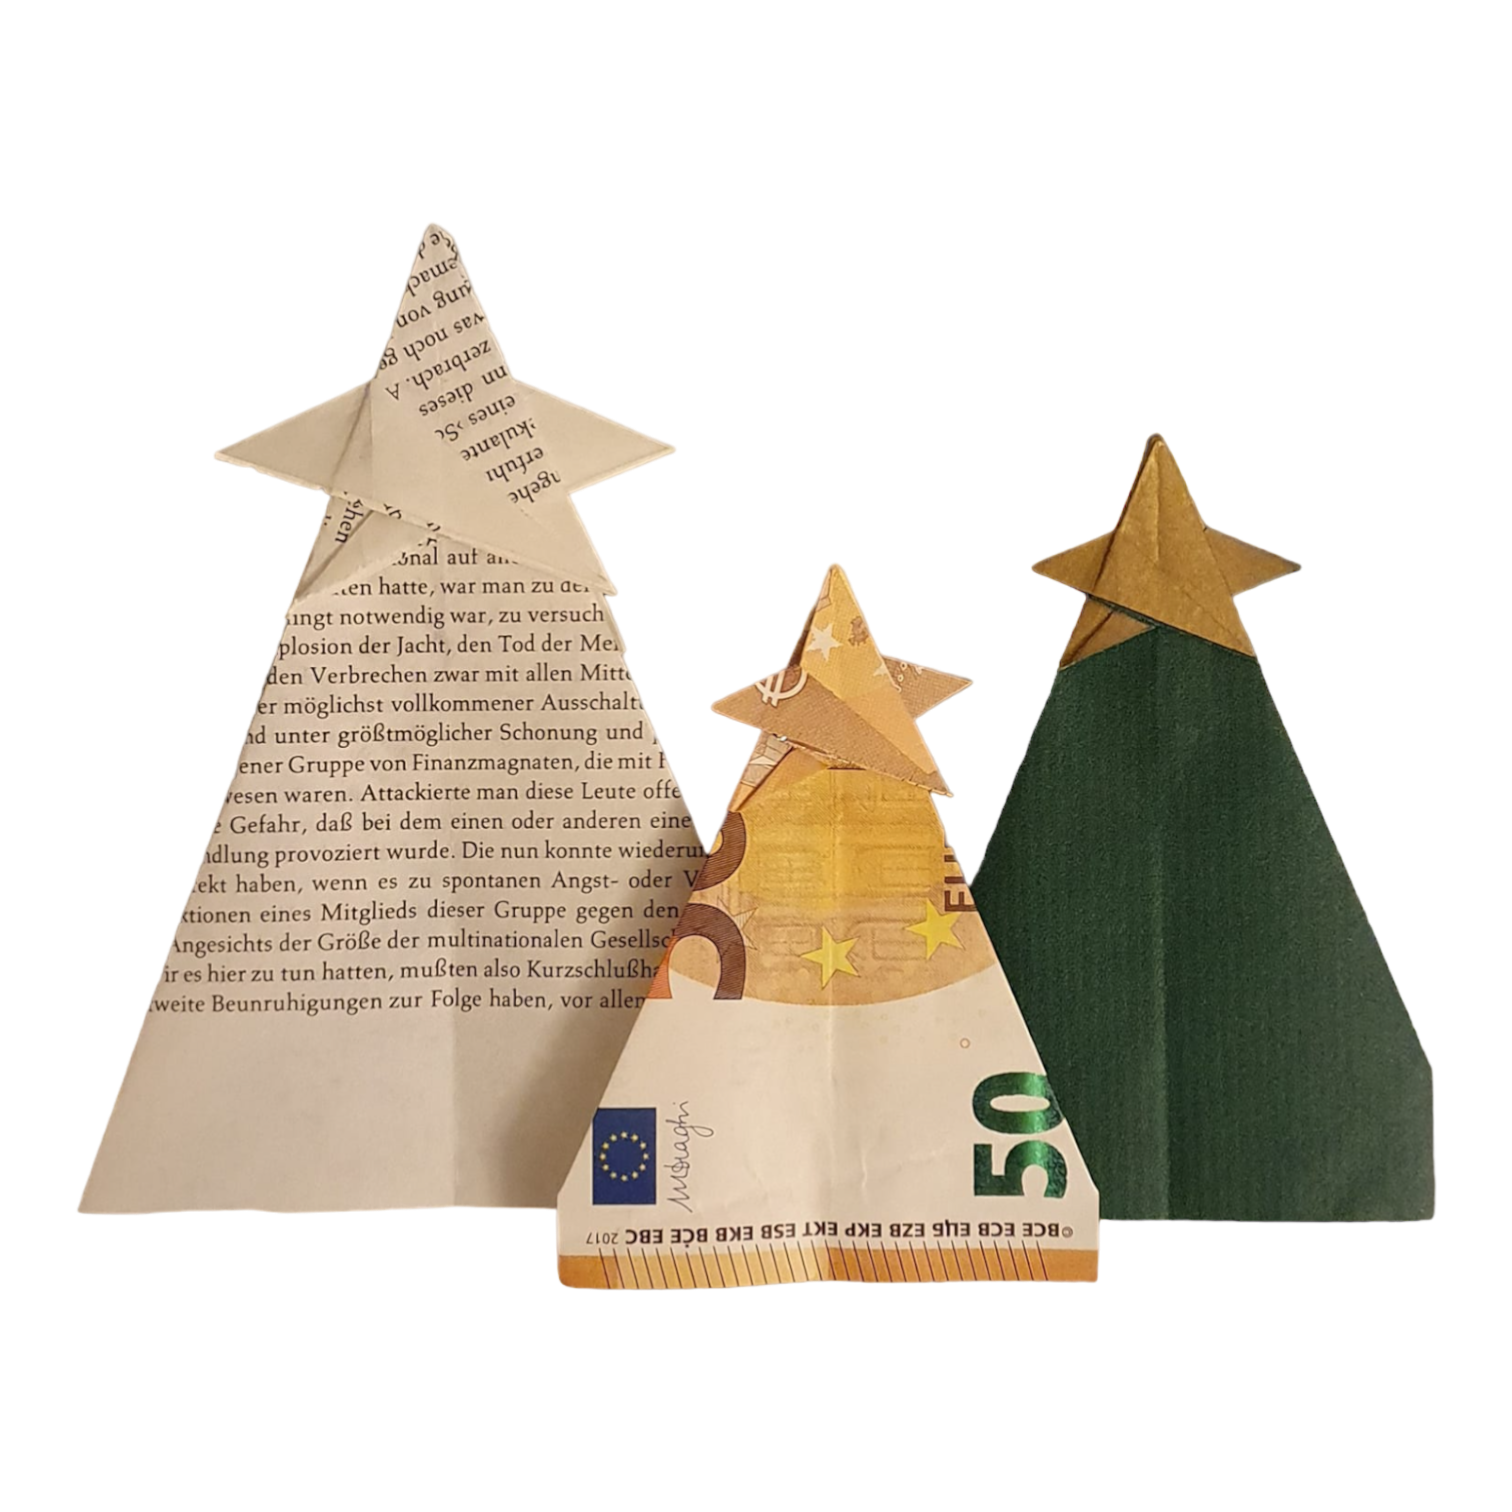 Origami Geldschein Weihnachtsbaum mit Stern